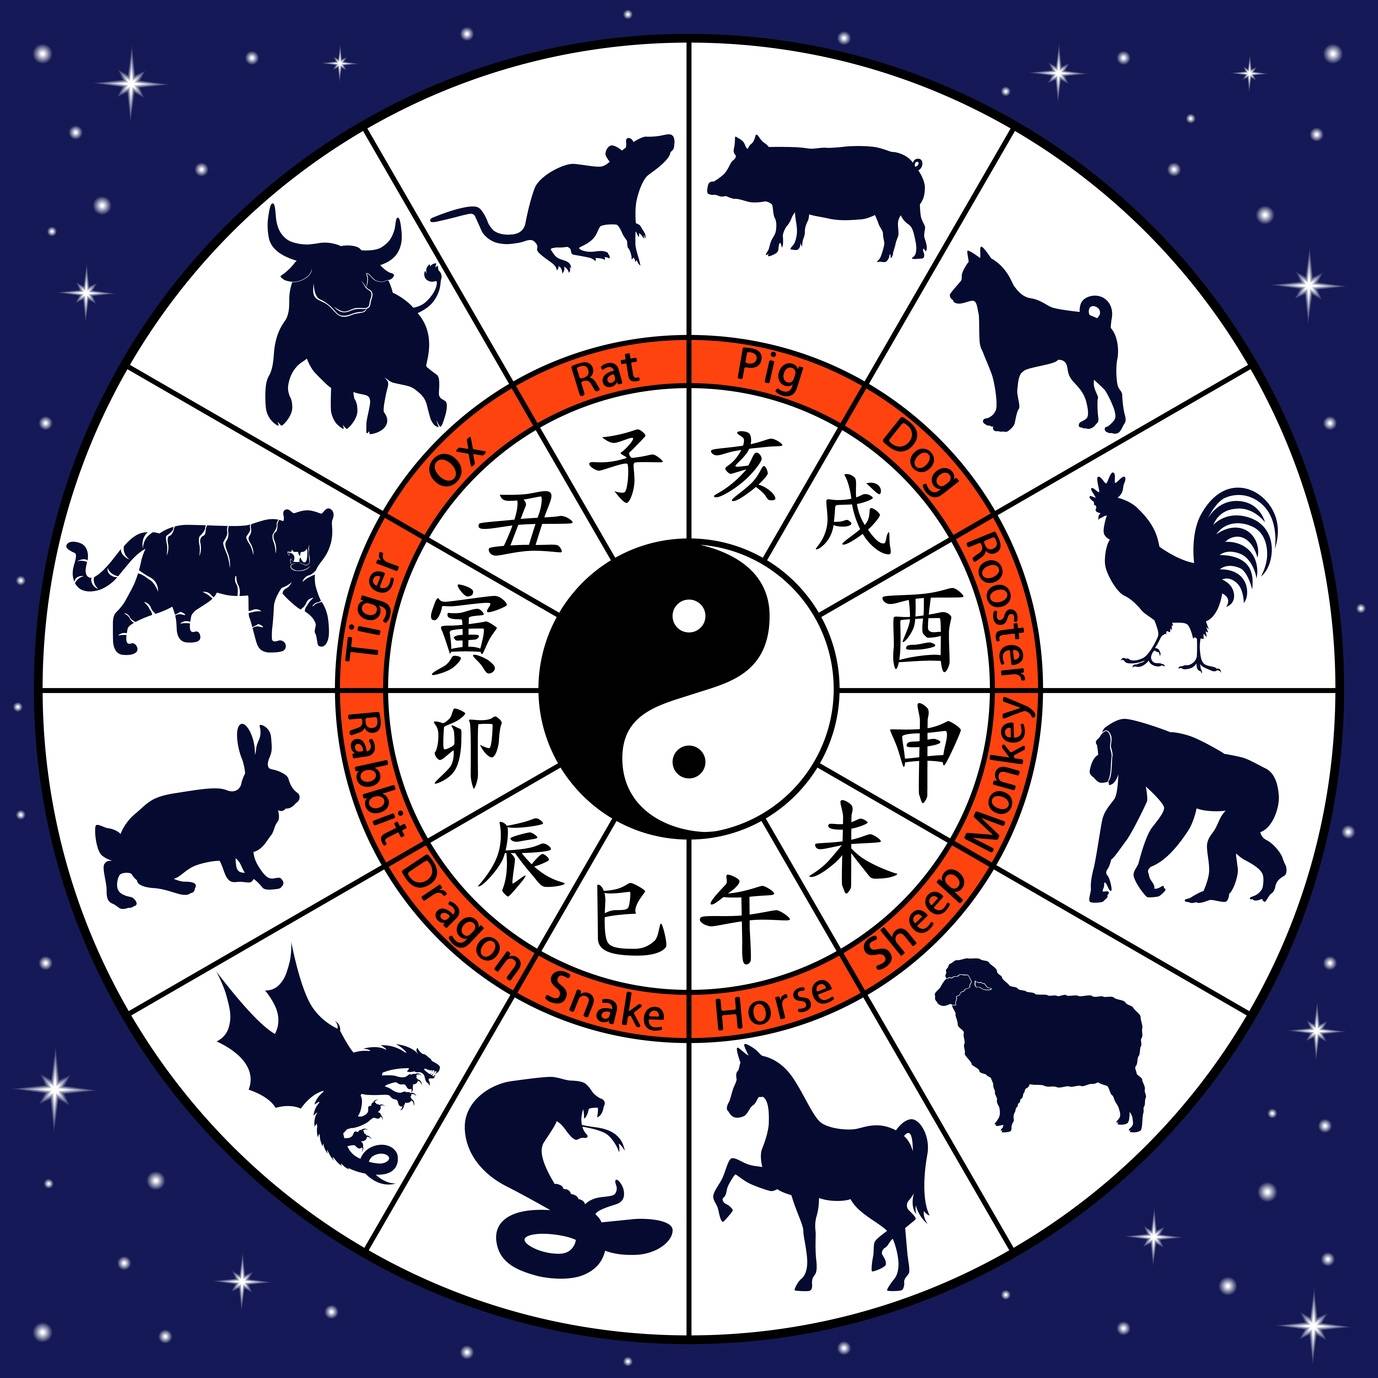 Chińskie znaki zodiaku - jak powstał chiński zodiak?